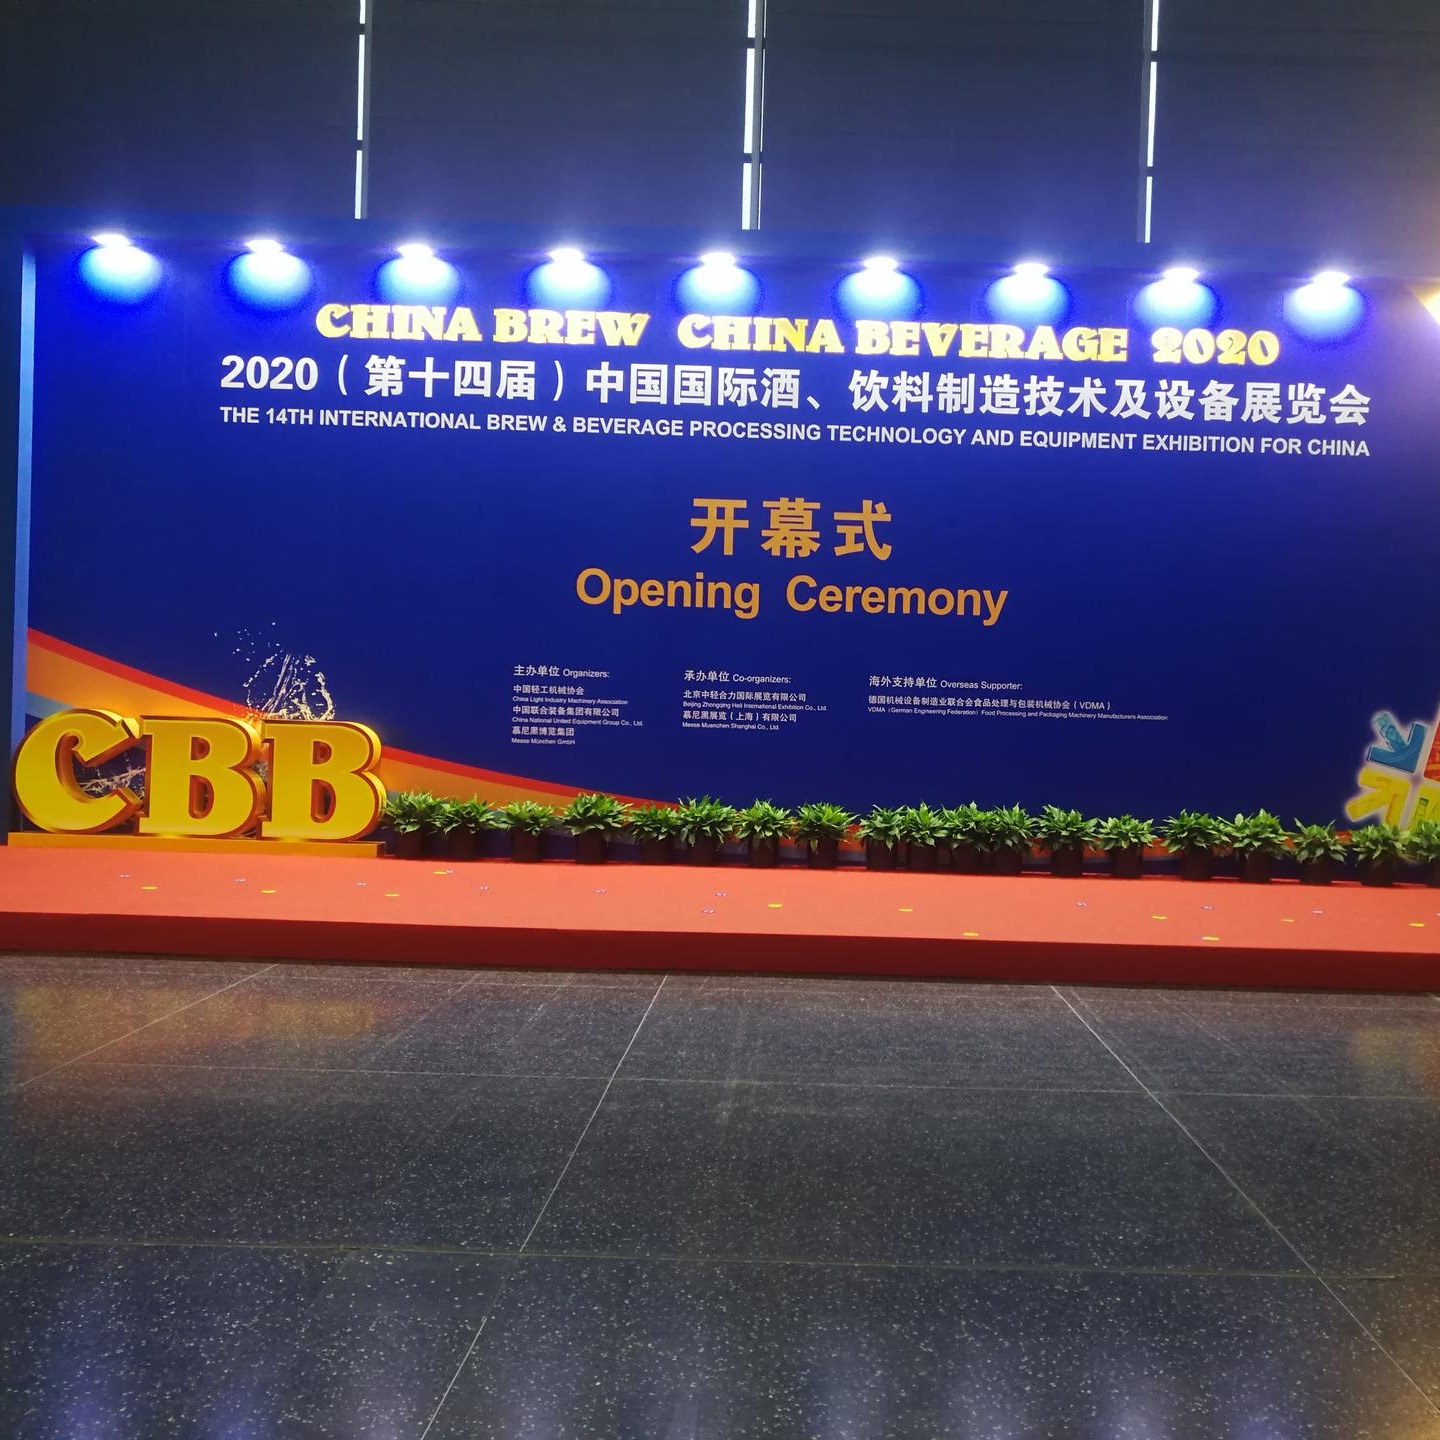 上海国际博览中心 中国国际酒饮料制造技术及设备展览 知名企业 1-77 输送线 灌装机 橡胶塑料金属配件